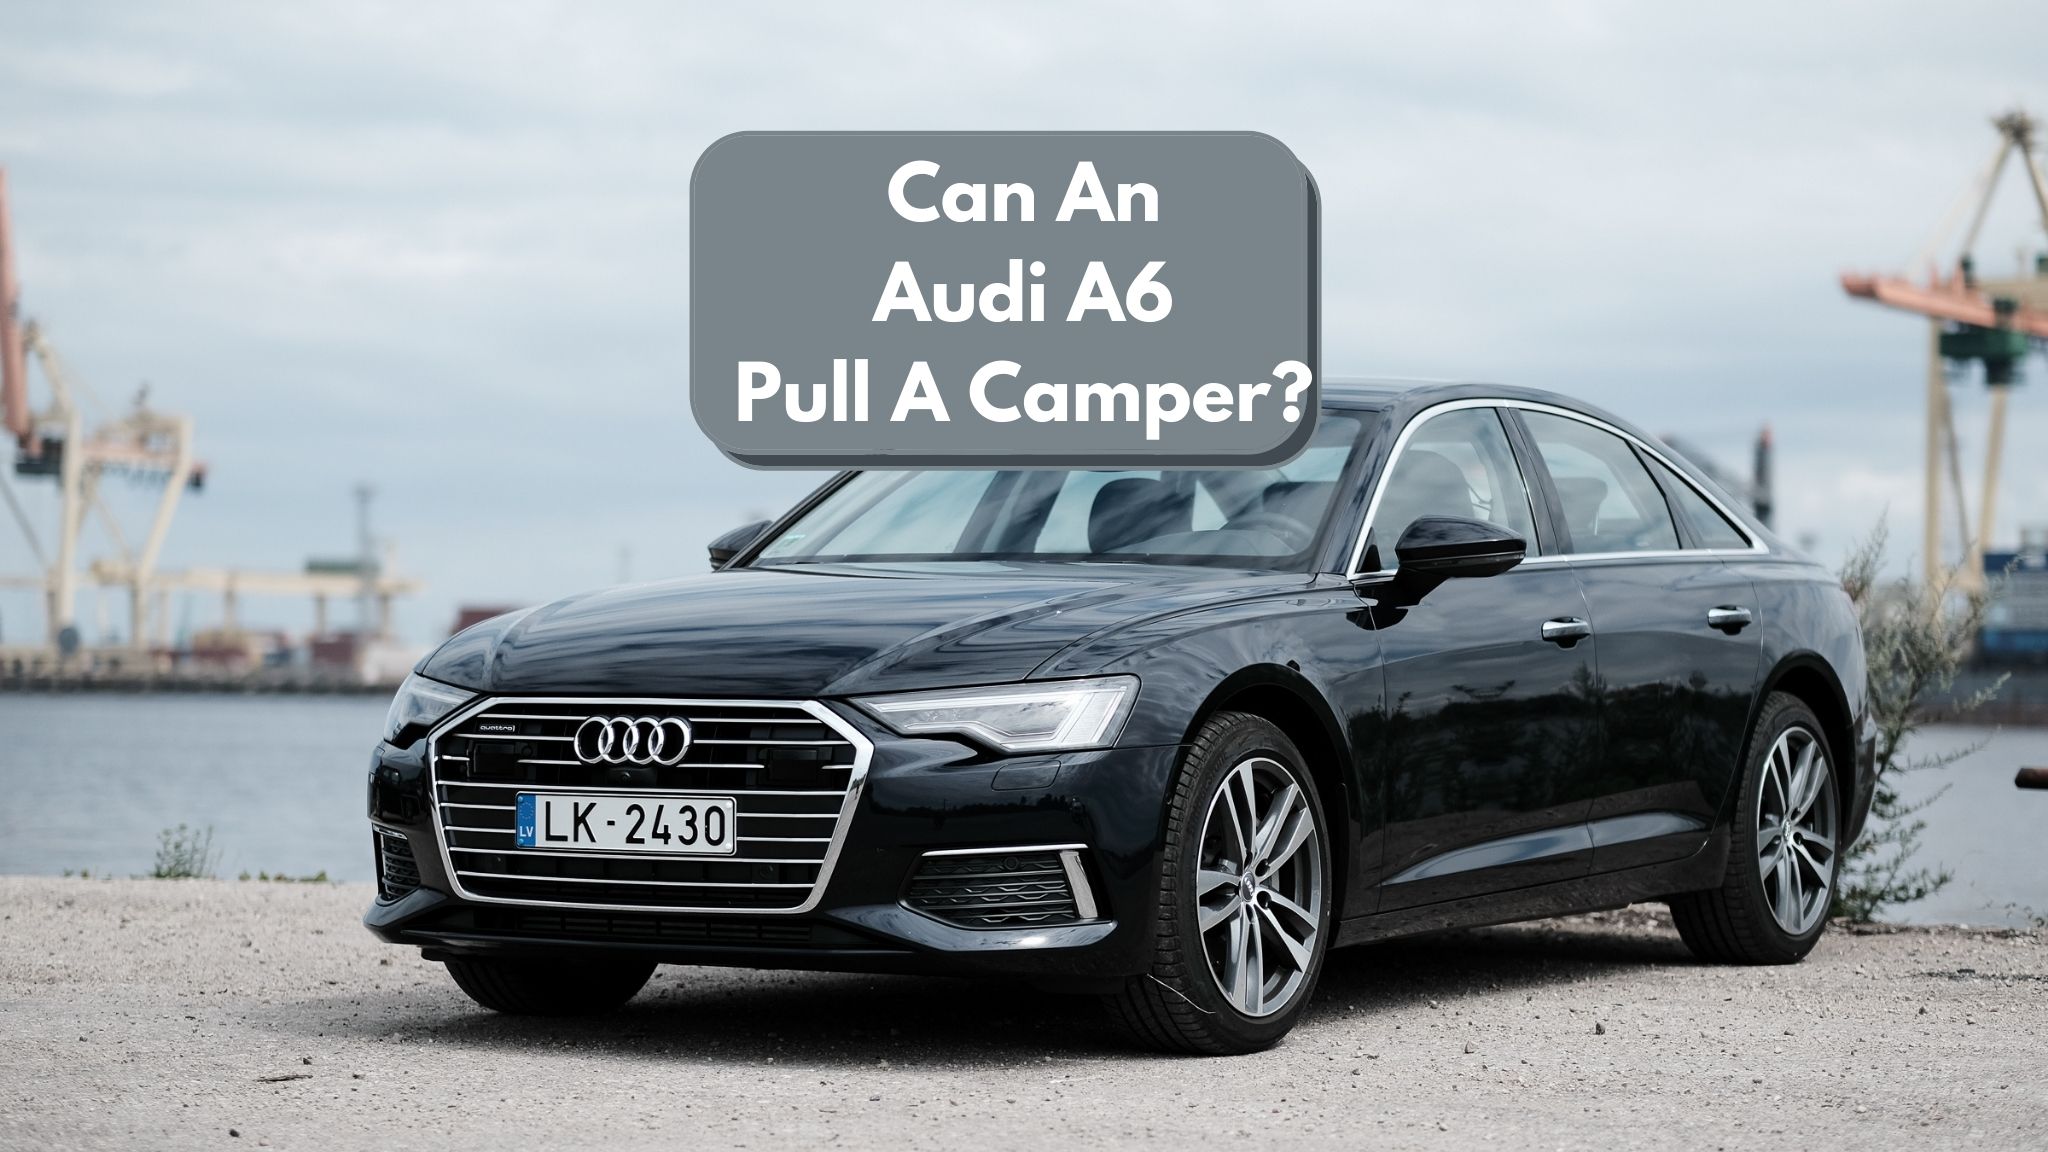 Can An Audi A6 Pull A Camper